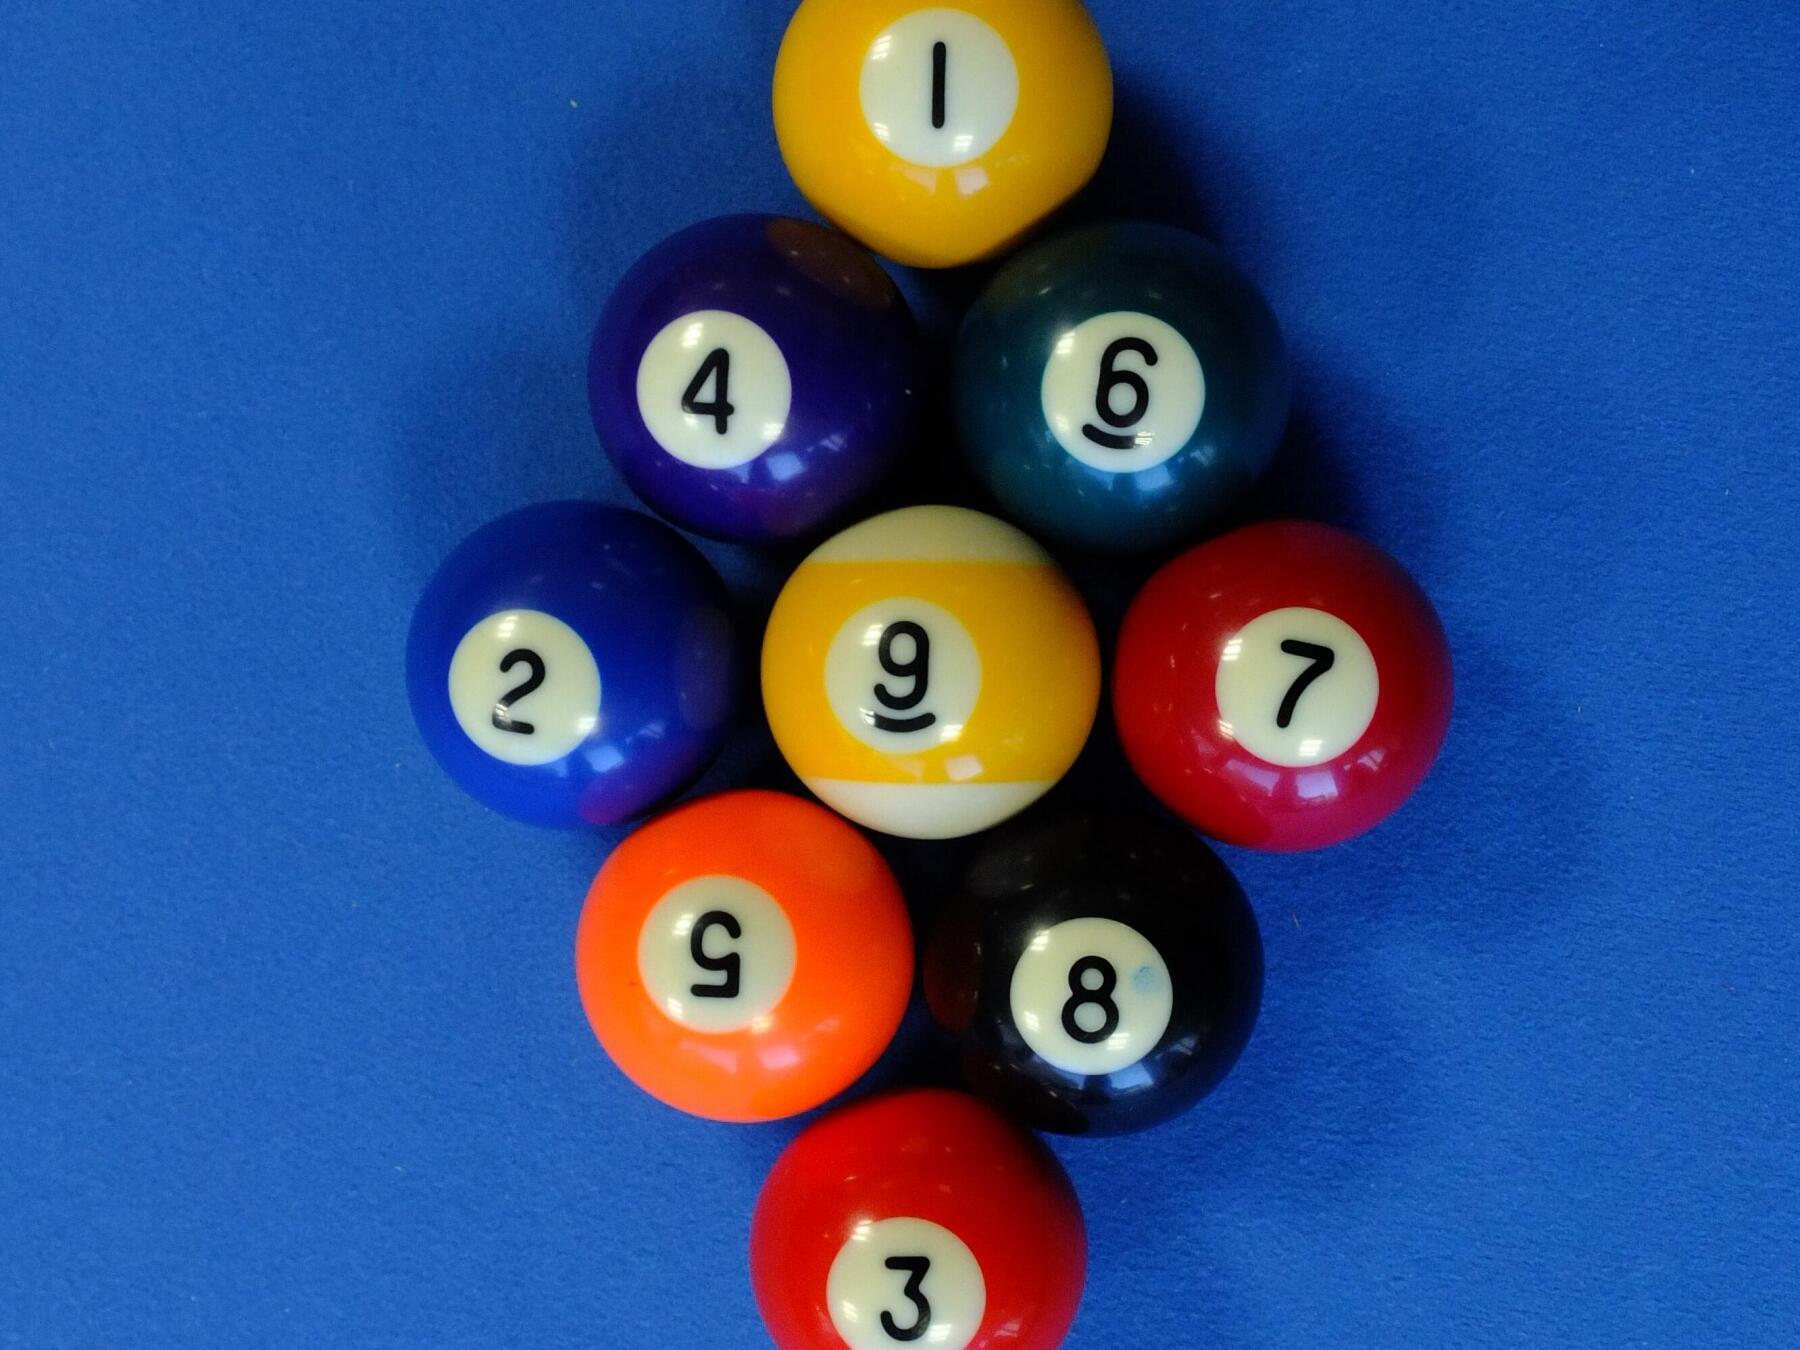 boules numérotées de 1 à 9 placées sur une table